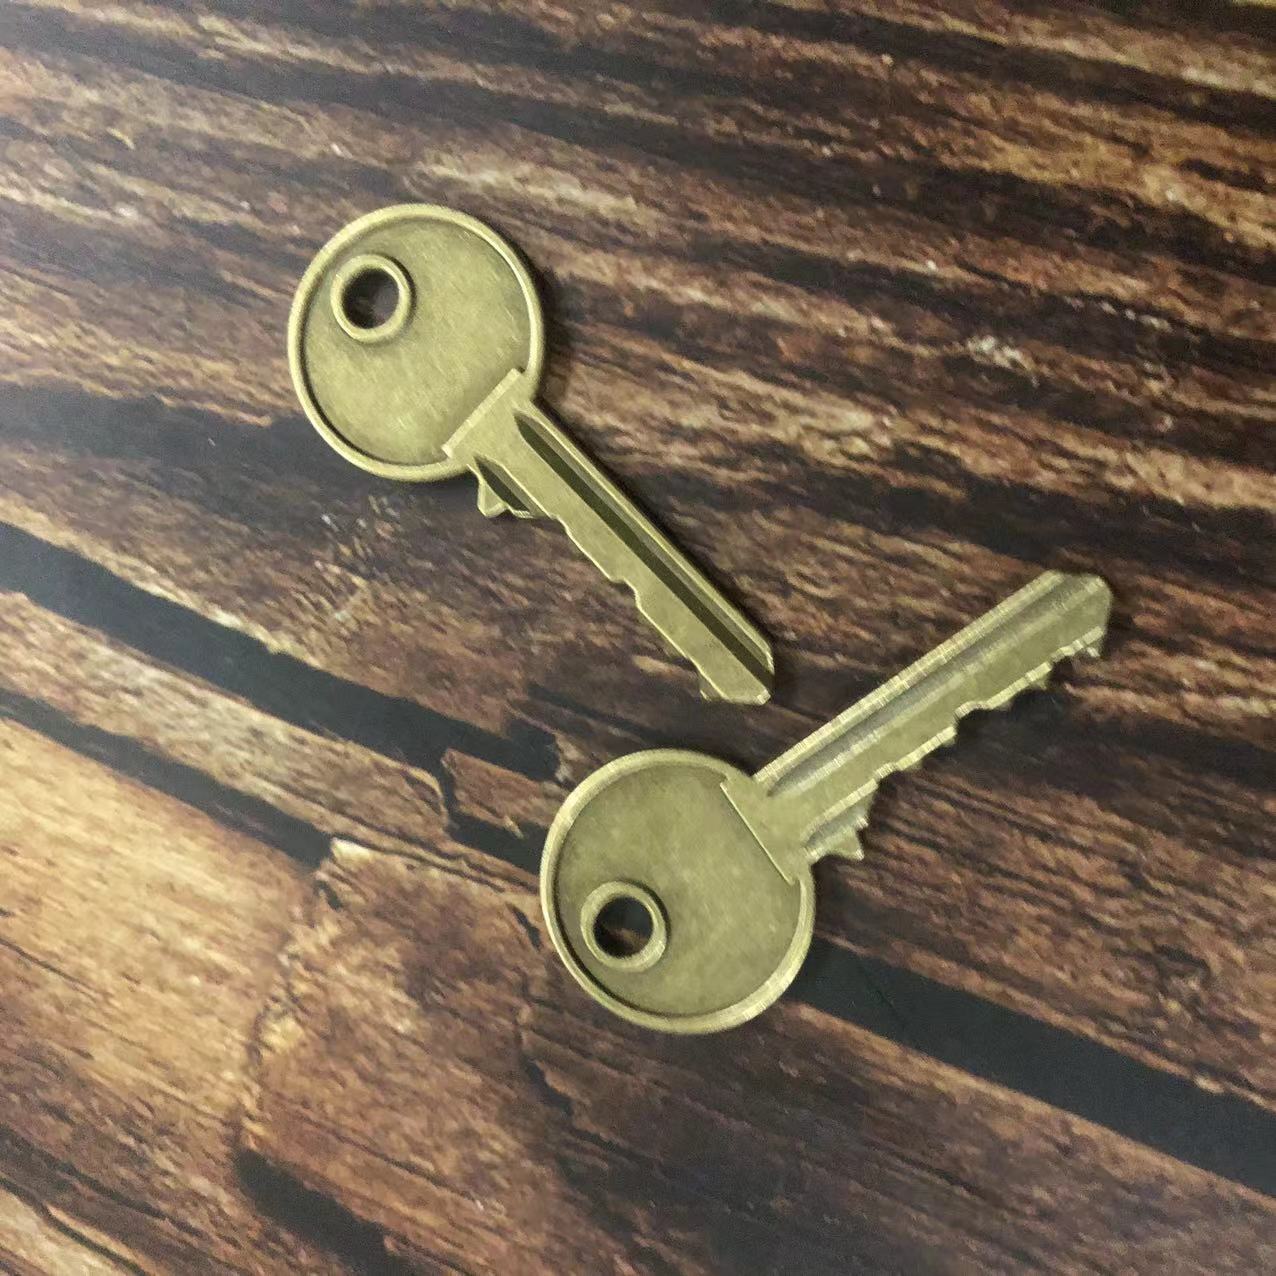 暗区突围主客房钥匙模型 机密文件金魔方古铜钥匙挂件金属道具